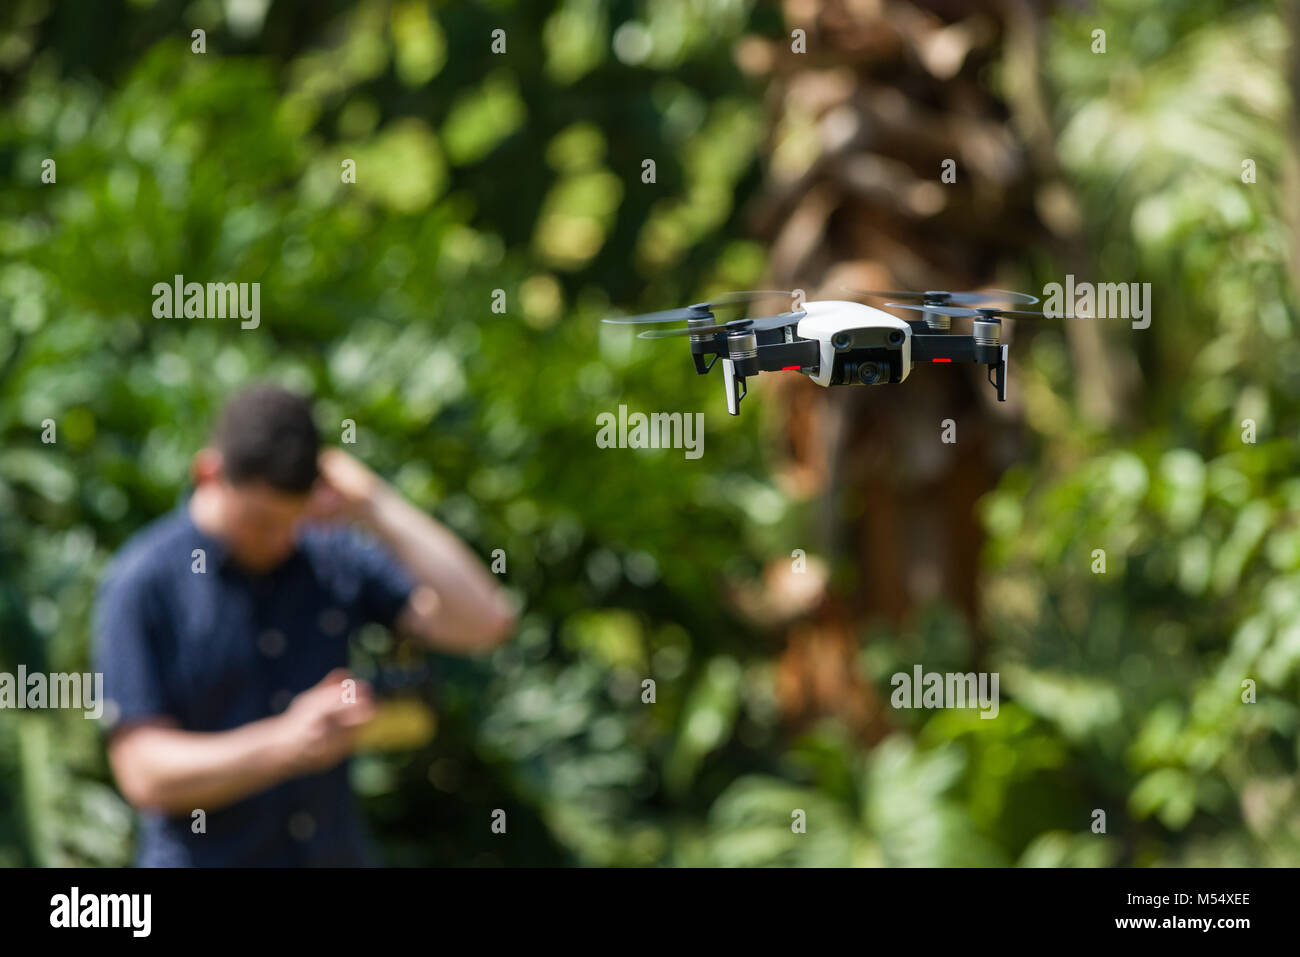 Un drone aérien Mavic DJI en vol avec un homme à la recherche de vol confus à l'arrière-plan Banque D'Images